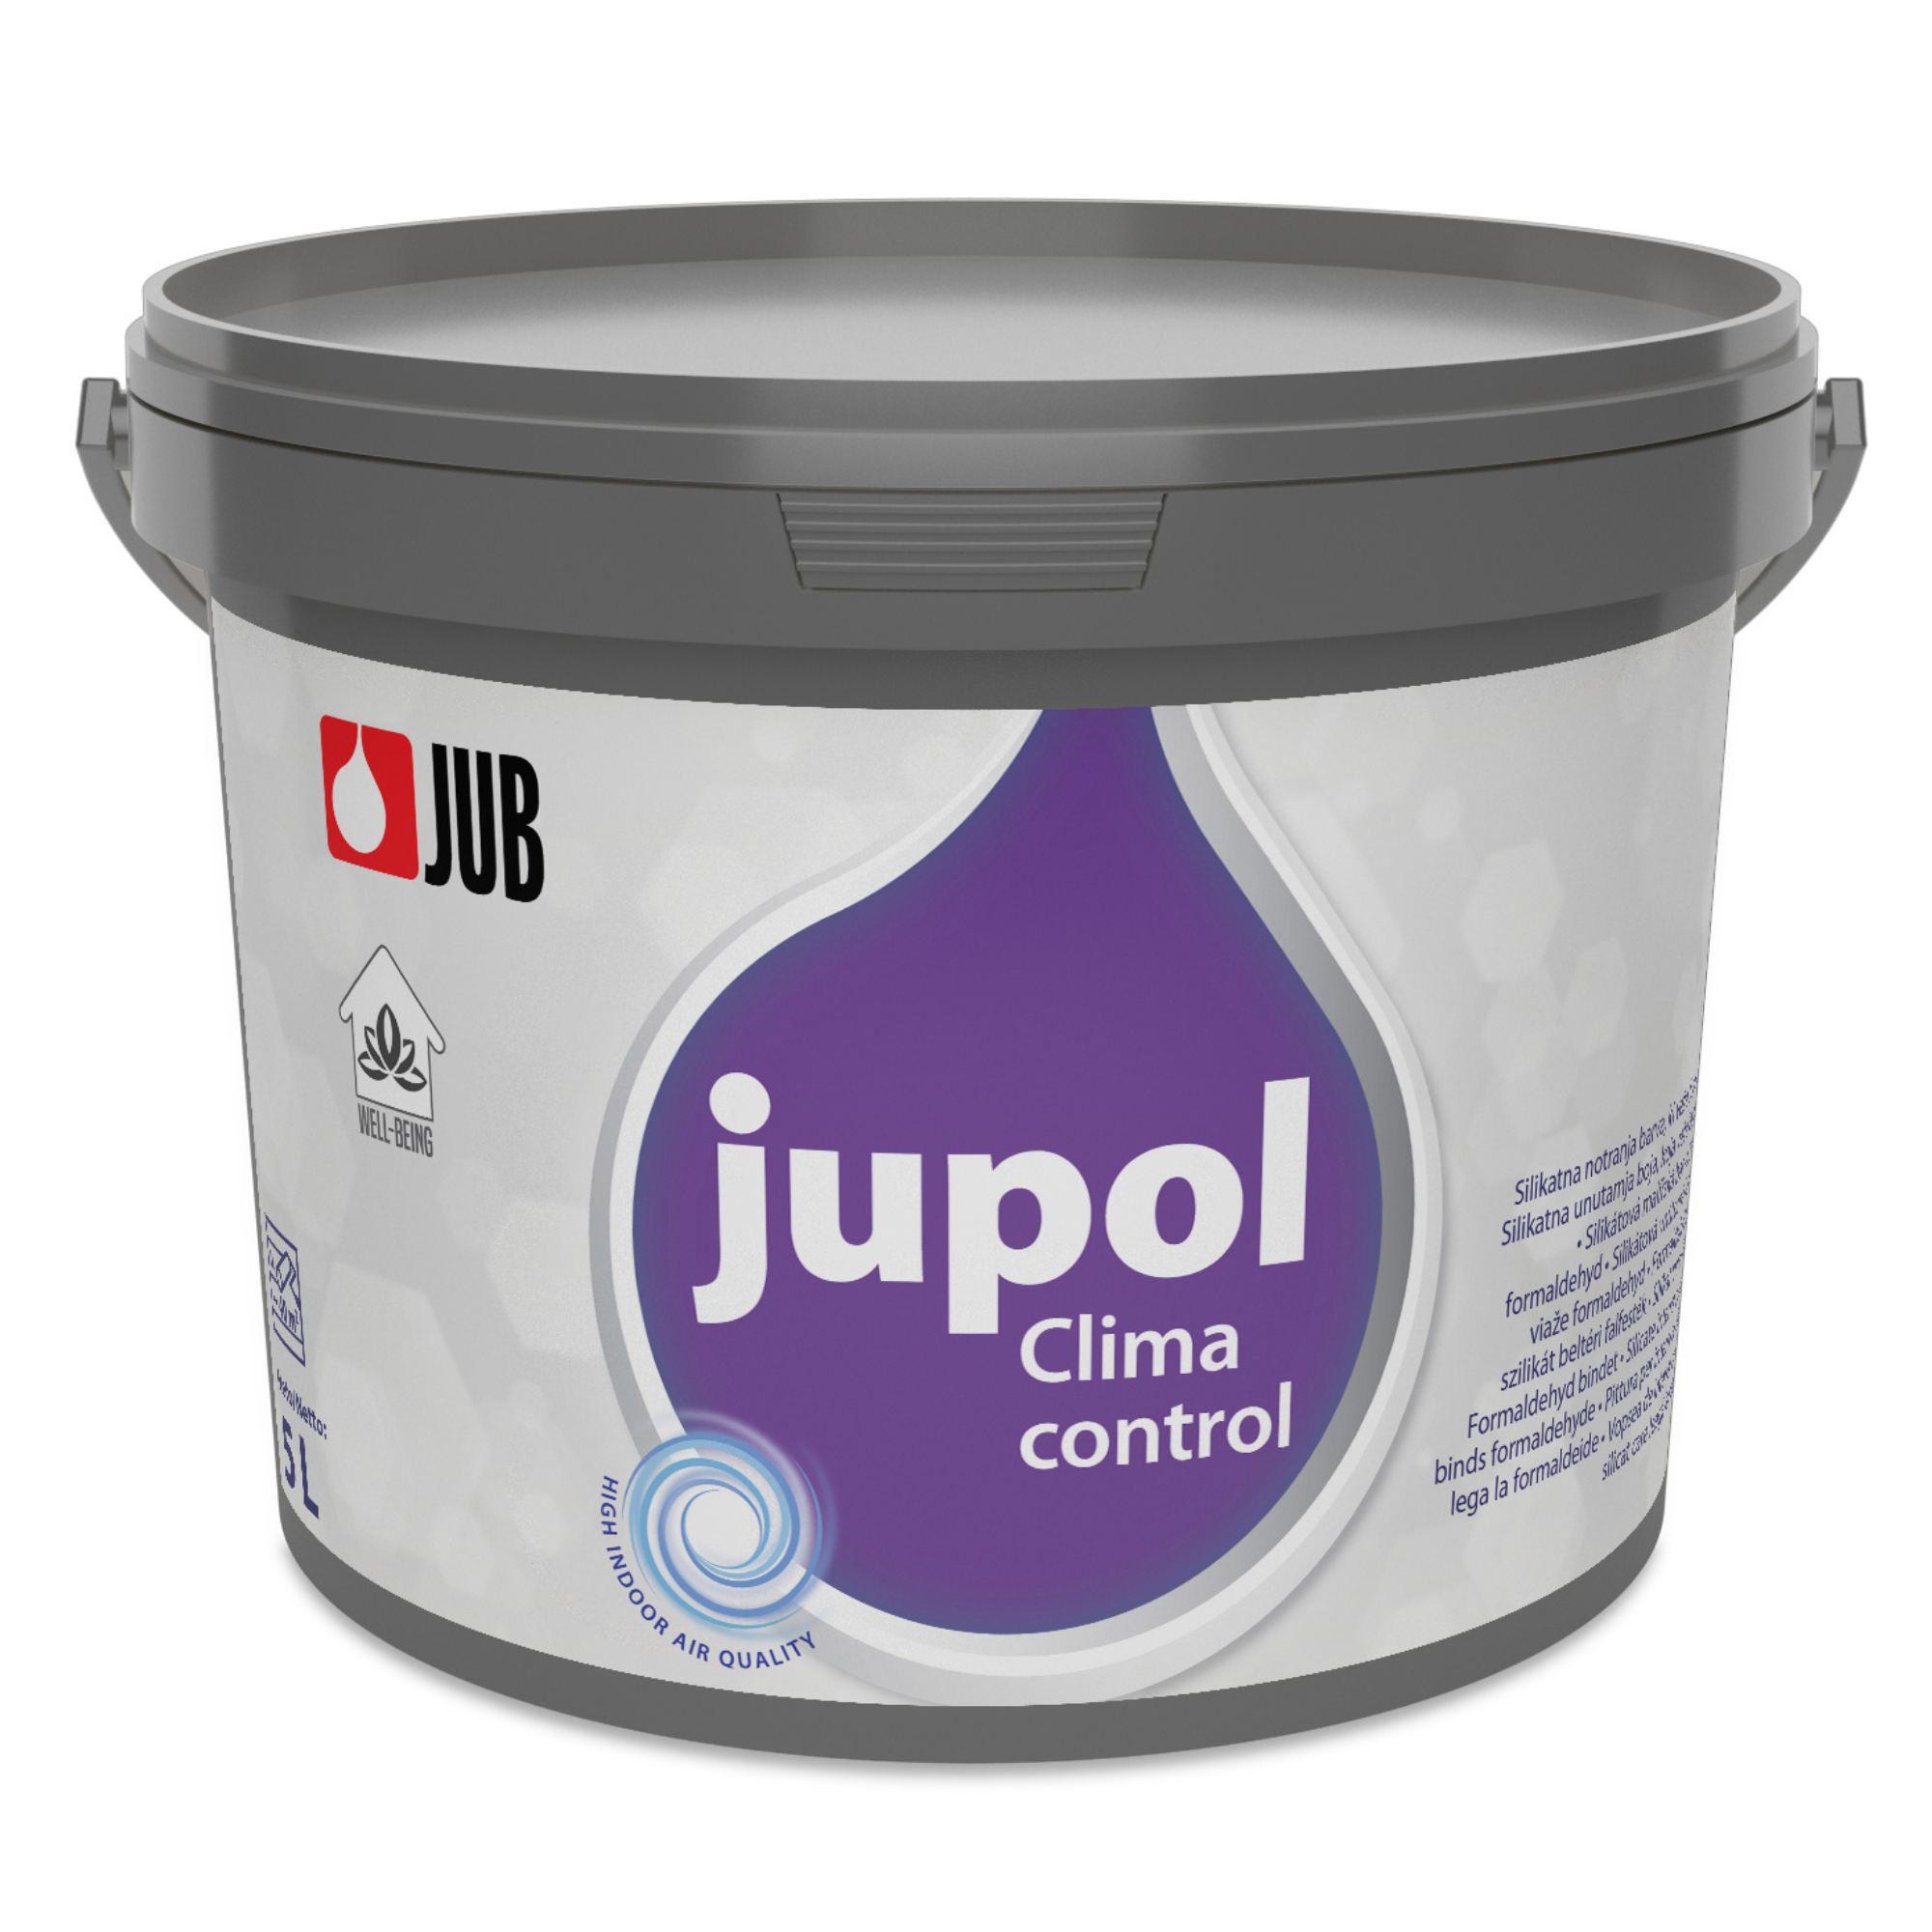 JUB JUPOL Clima control silikátová vnútorná farba viažuca formaldehyd 5 l